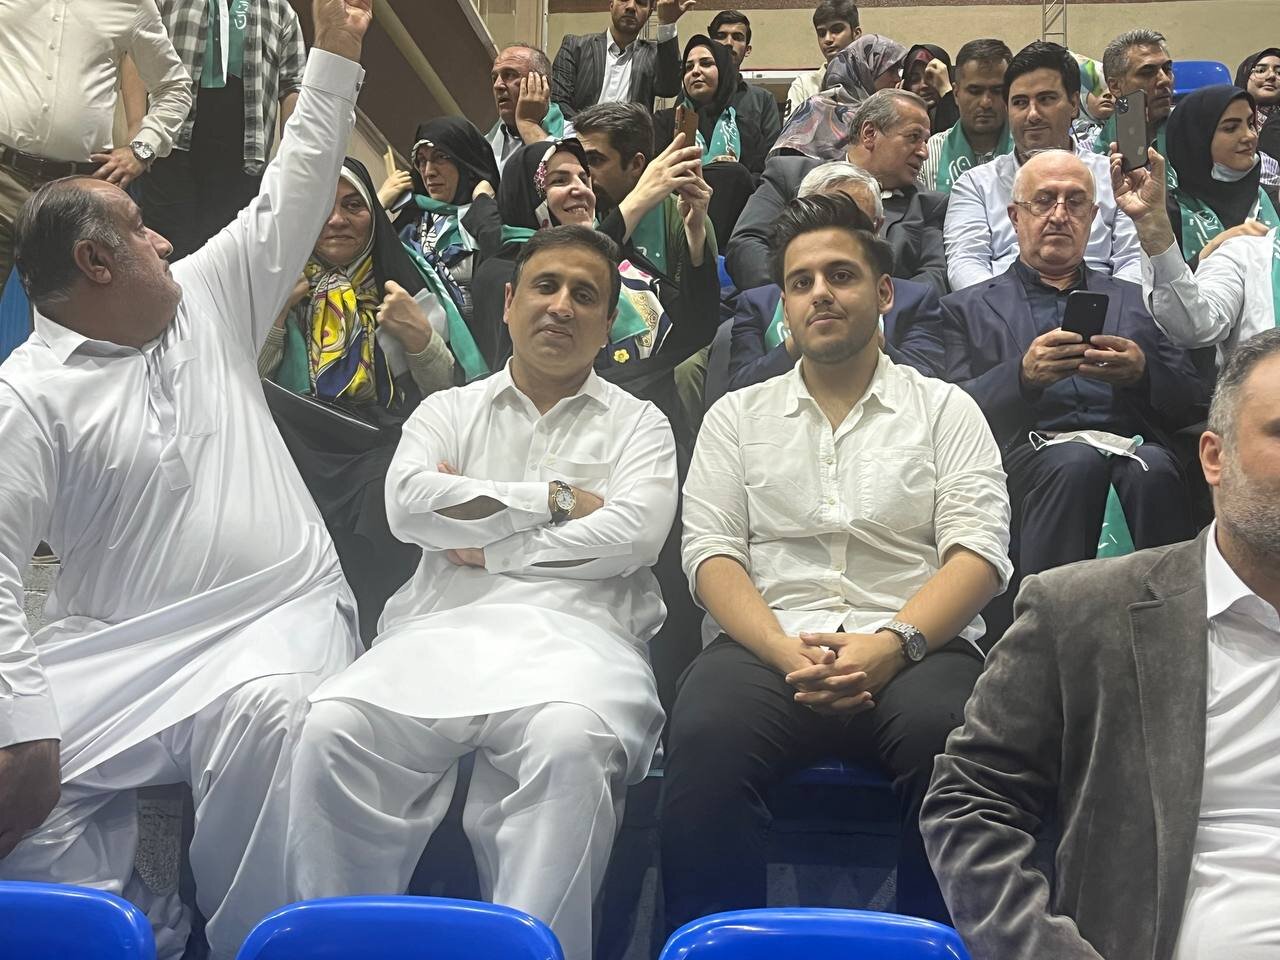 یادگارِ رفسنجانی با شال سبز  در ستاد پزشکیان حاضر شد